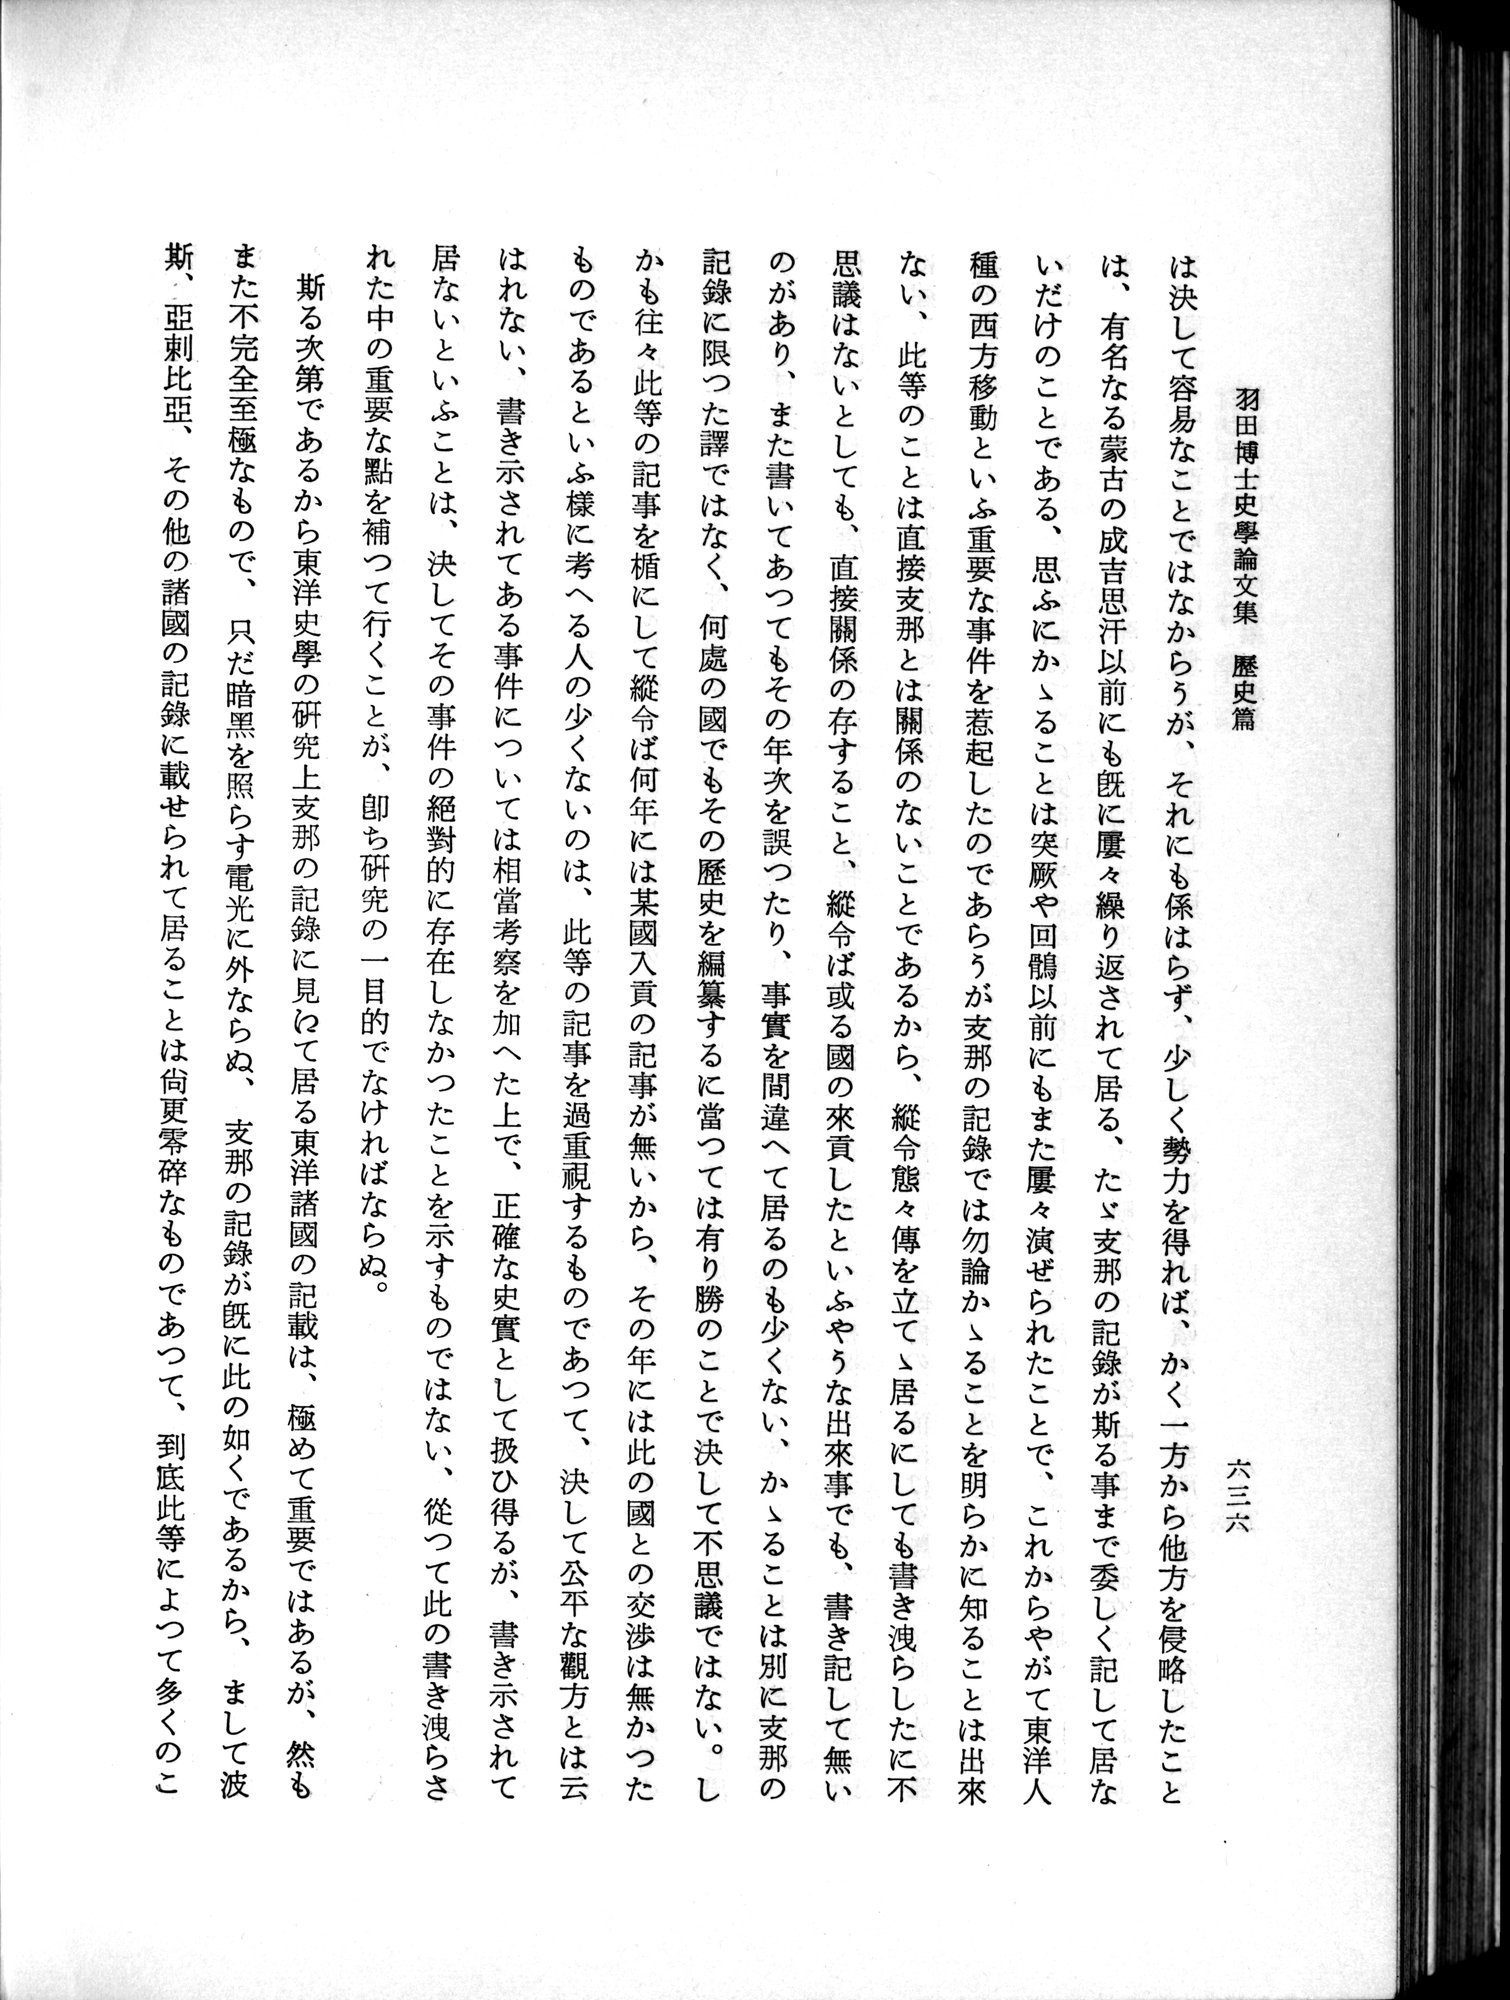 羽田博士史学論文集 : vol.1 / Page 674 (Grayscale High Resolution Image)